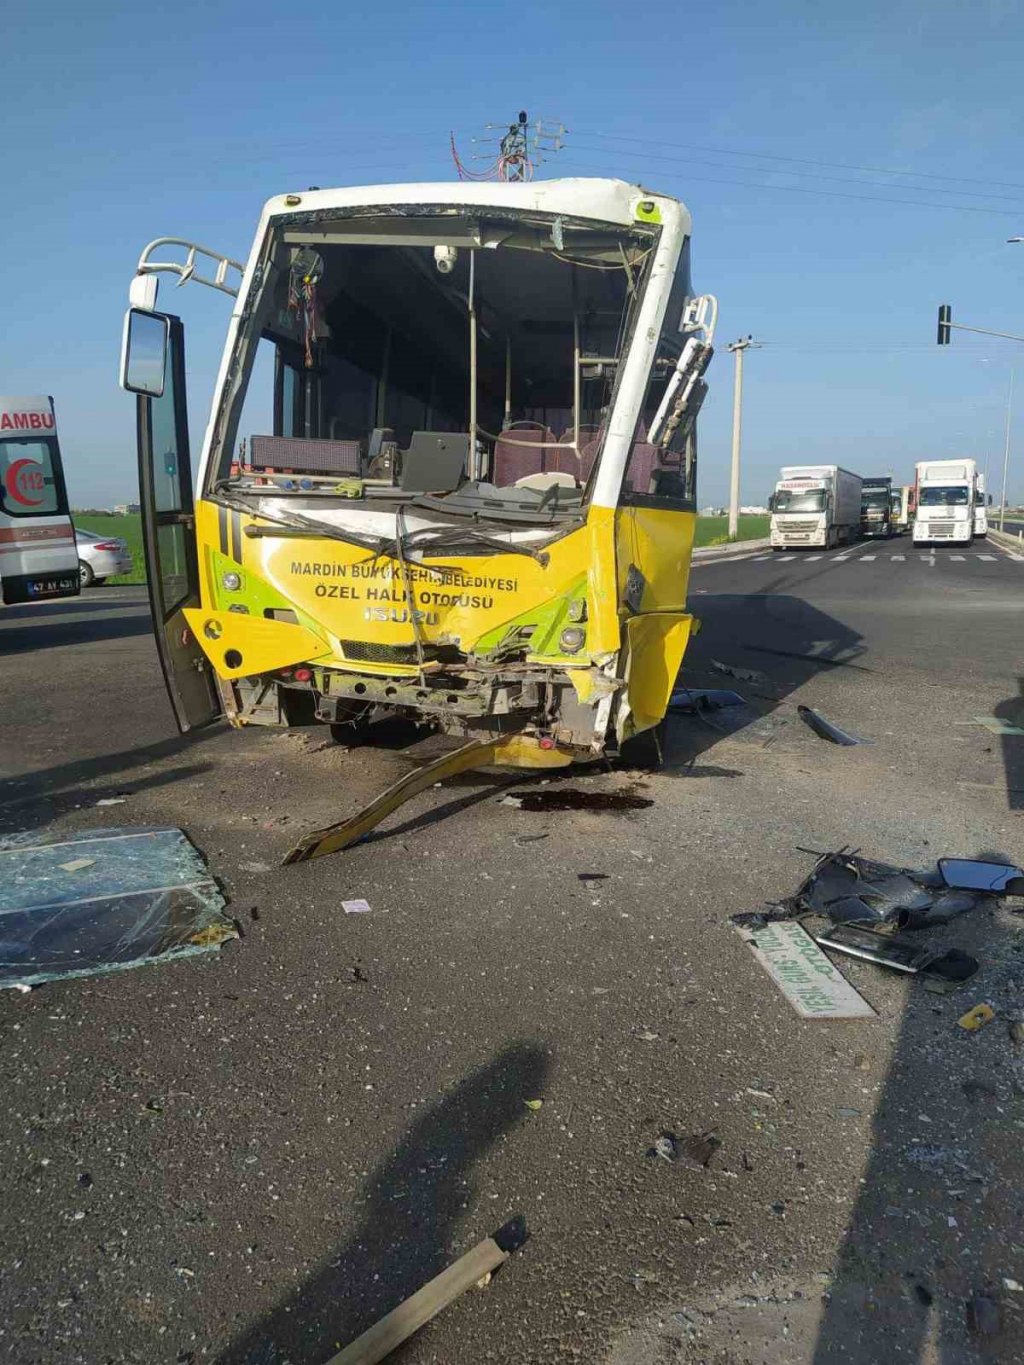 Mardin'de feci kaza: Tır halk otobüsüne çarptı 12 yaralı